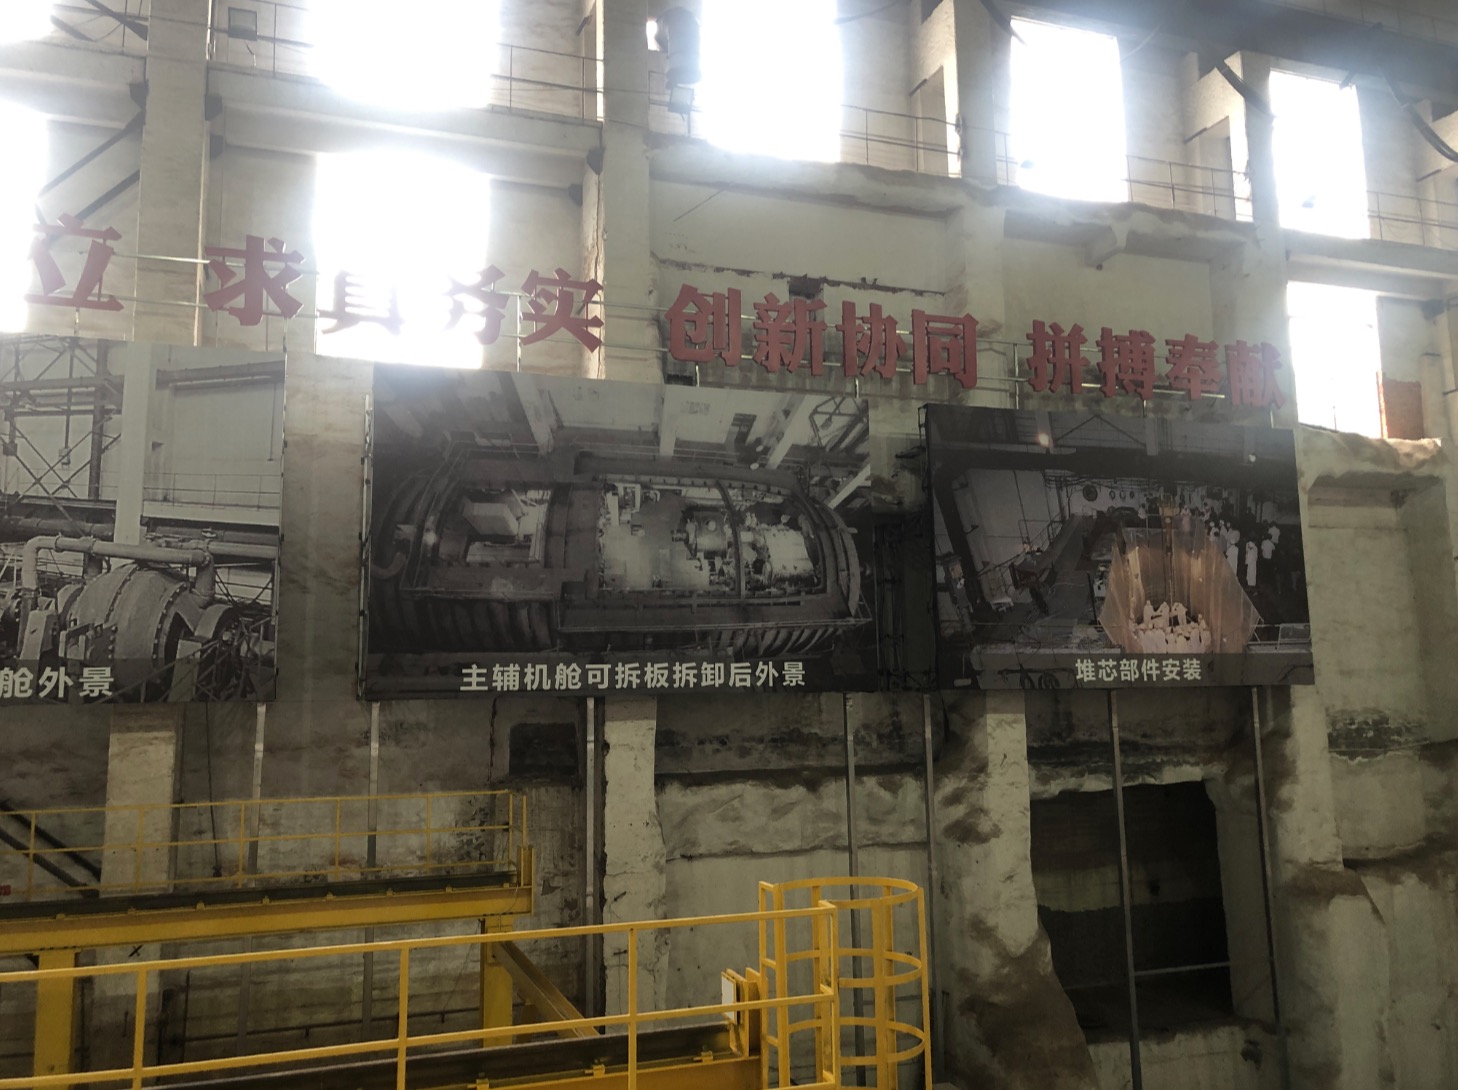 陆上模式反应堆厂房内部。新闻记者 杨漾 图